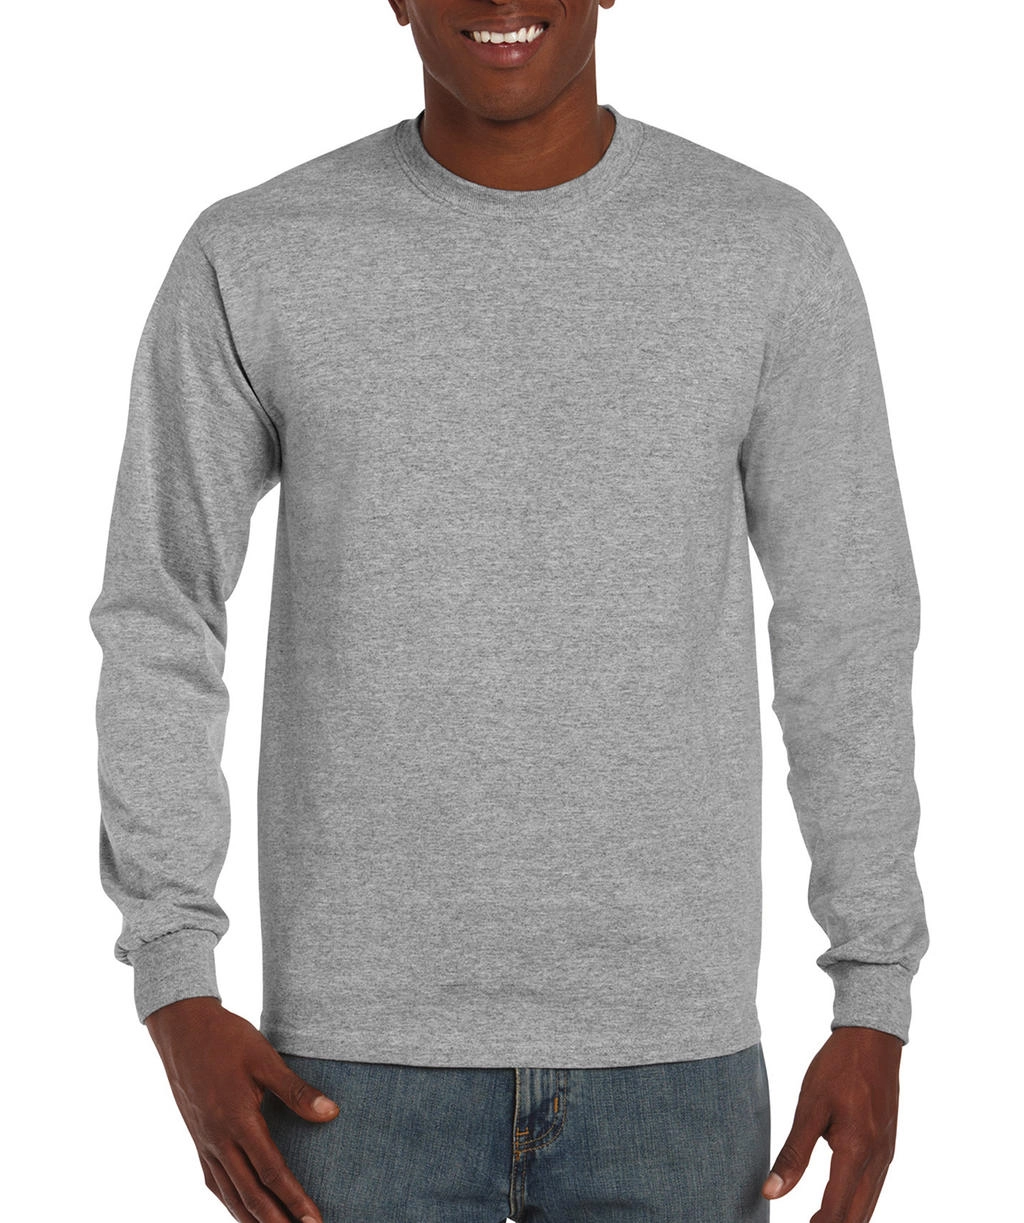 Hammer™ Adult Long Sleeve T-Shirt zum Besticken und Bedrucken in der Farbe Sport Grey mit Ihren Logo, Schriftzug oder Motiv.